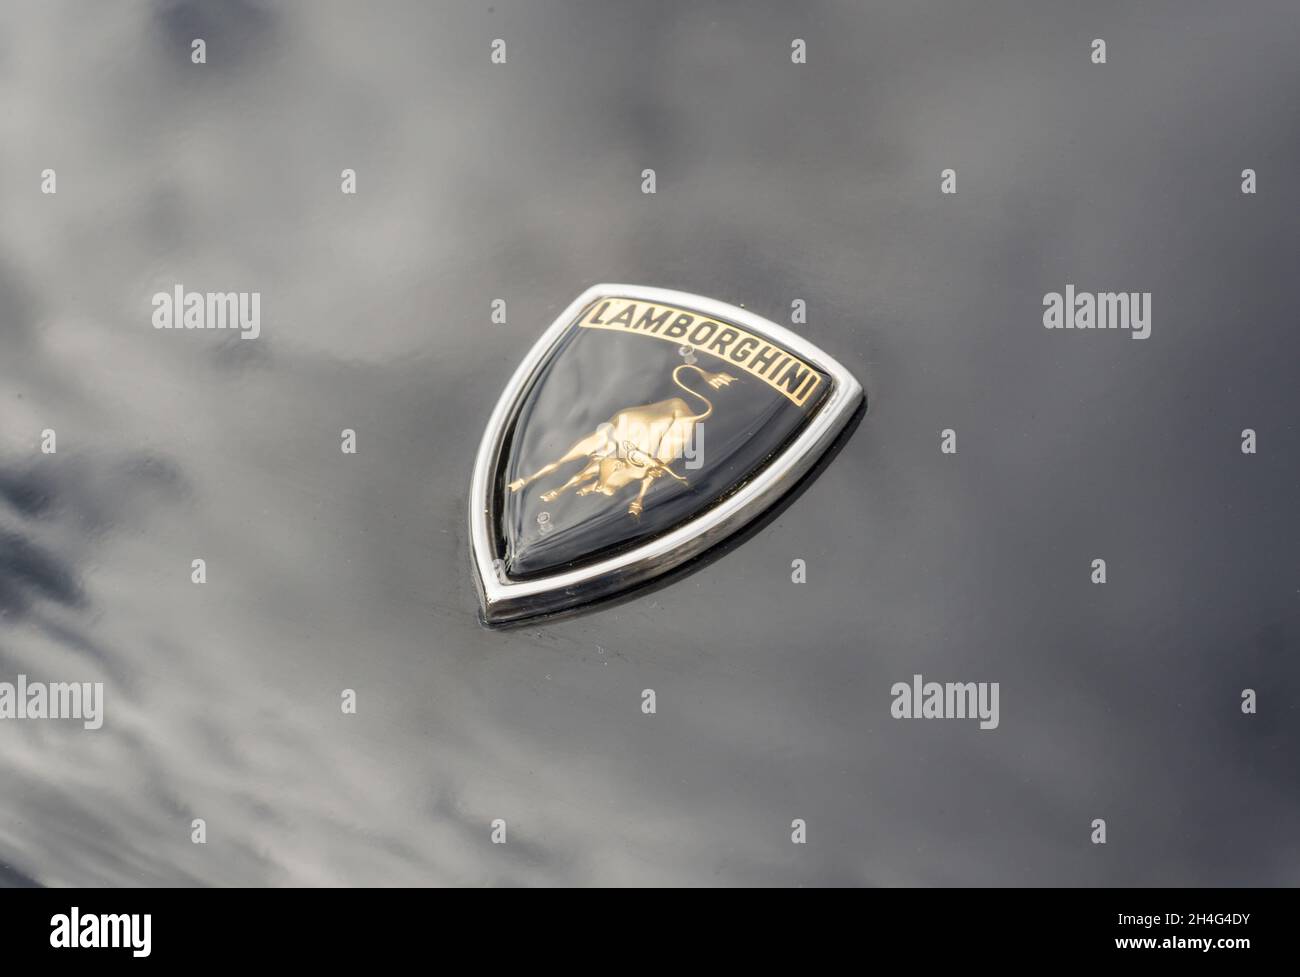 Gros plan de l'emblème du logo sur le devant d'une Lamborghini Countach LP5000 Quattrovalvole sport super voiture noire Banque D'Images